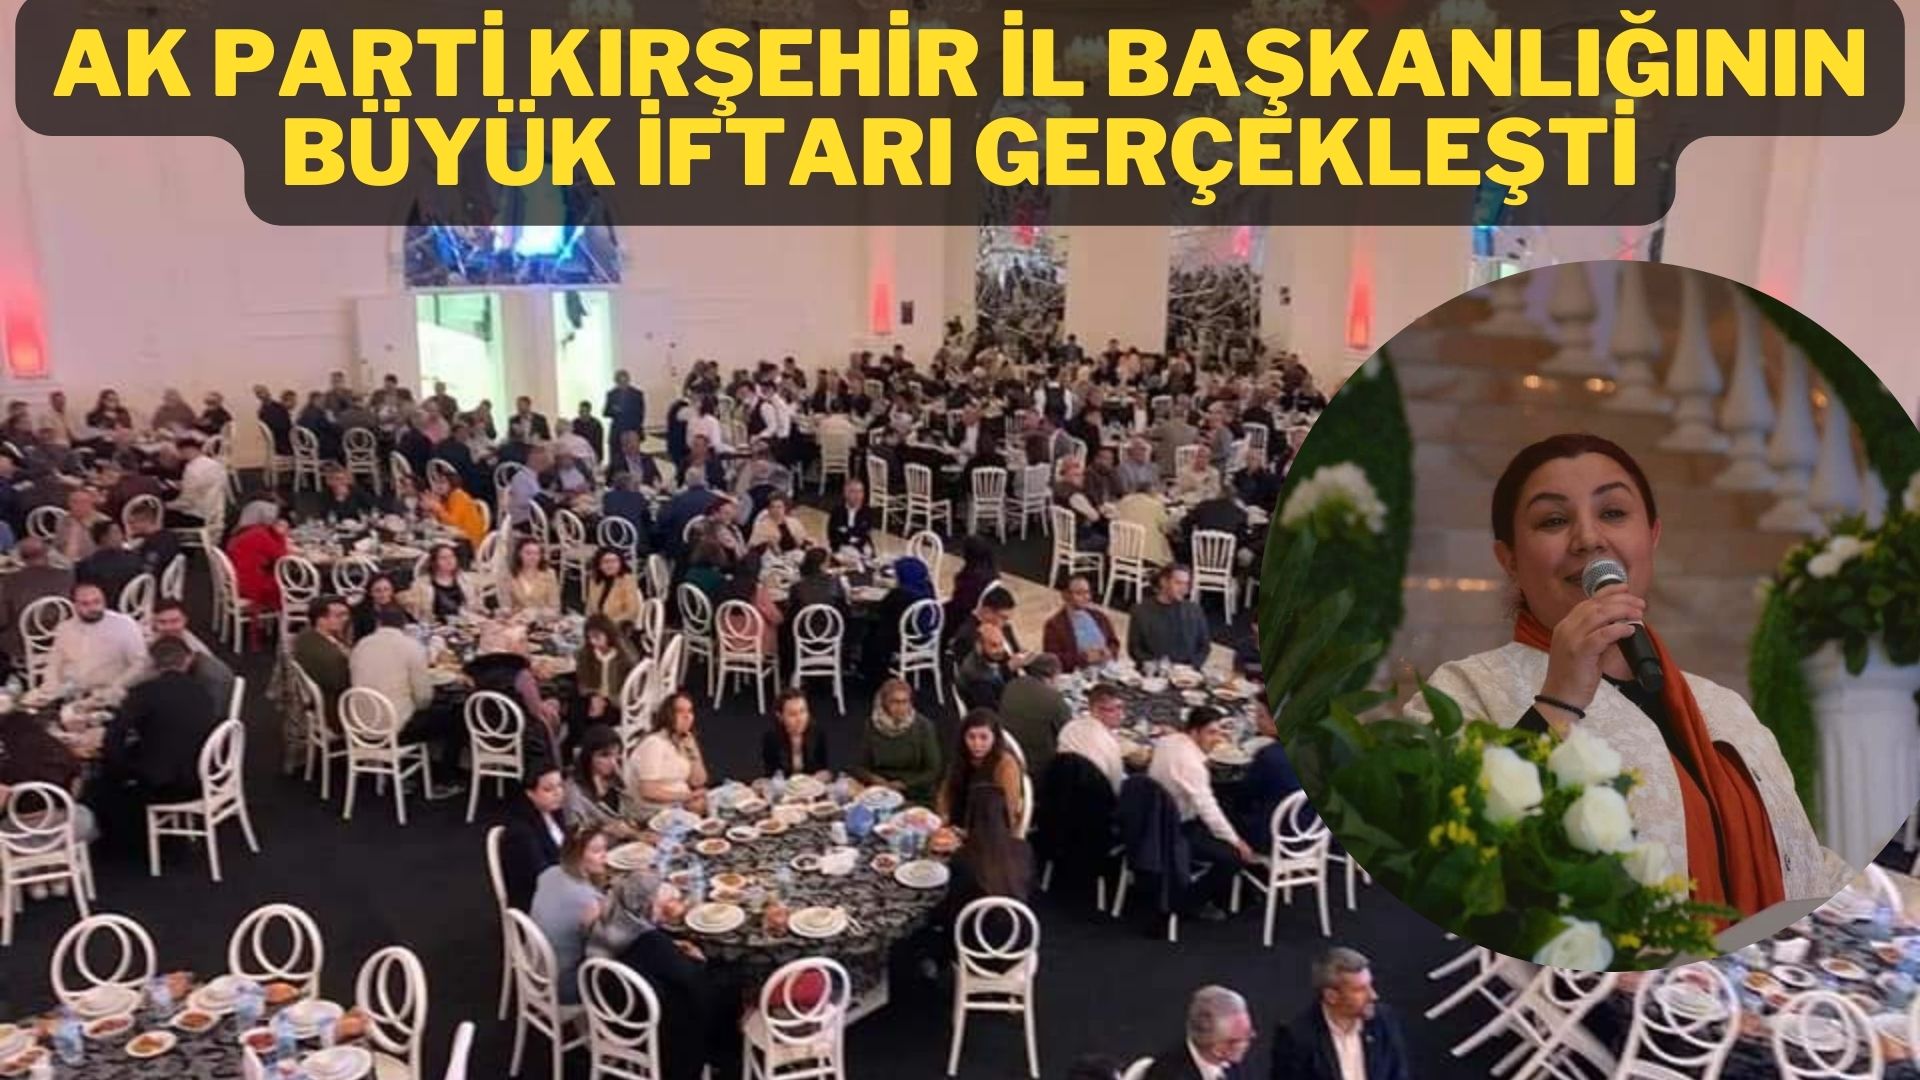 AK Parti Kırşehir İl Başkanlığı Büyük İftar programı gerçekleşti